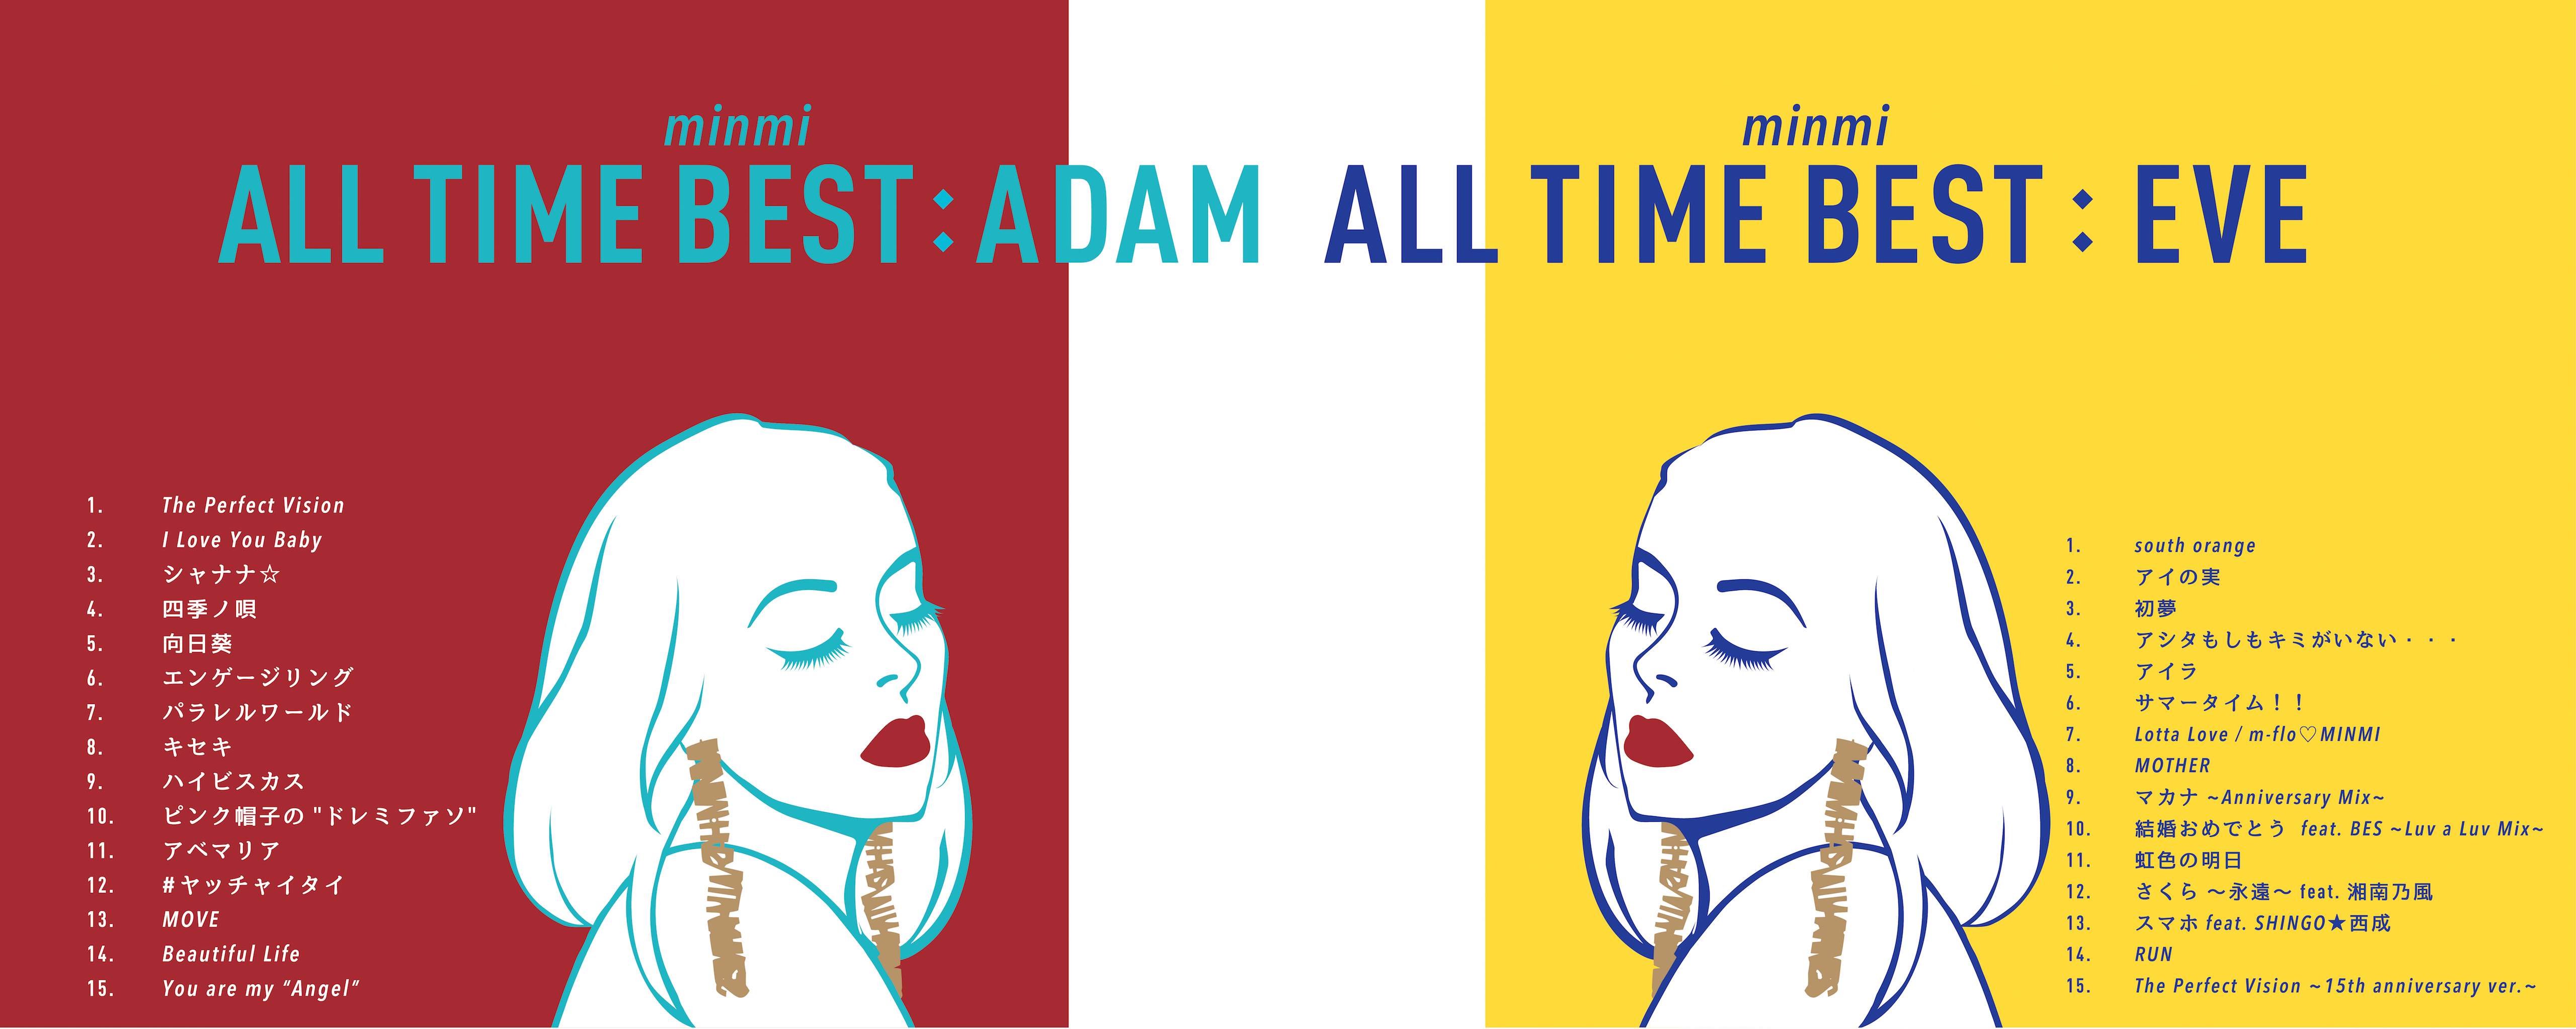 17年02月の記事一覧 Minmi All Time Best Adam Eve 特設サイト